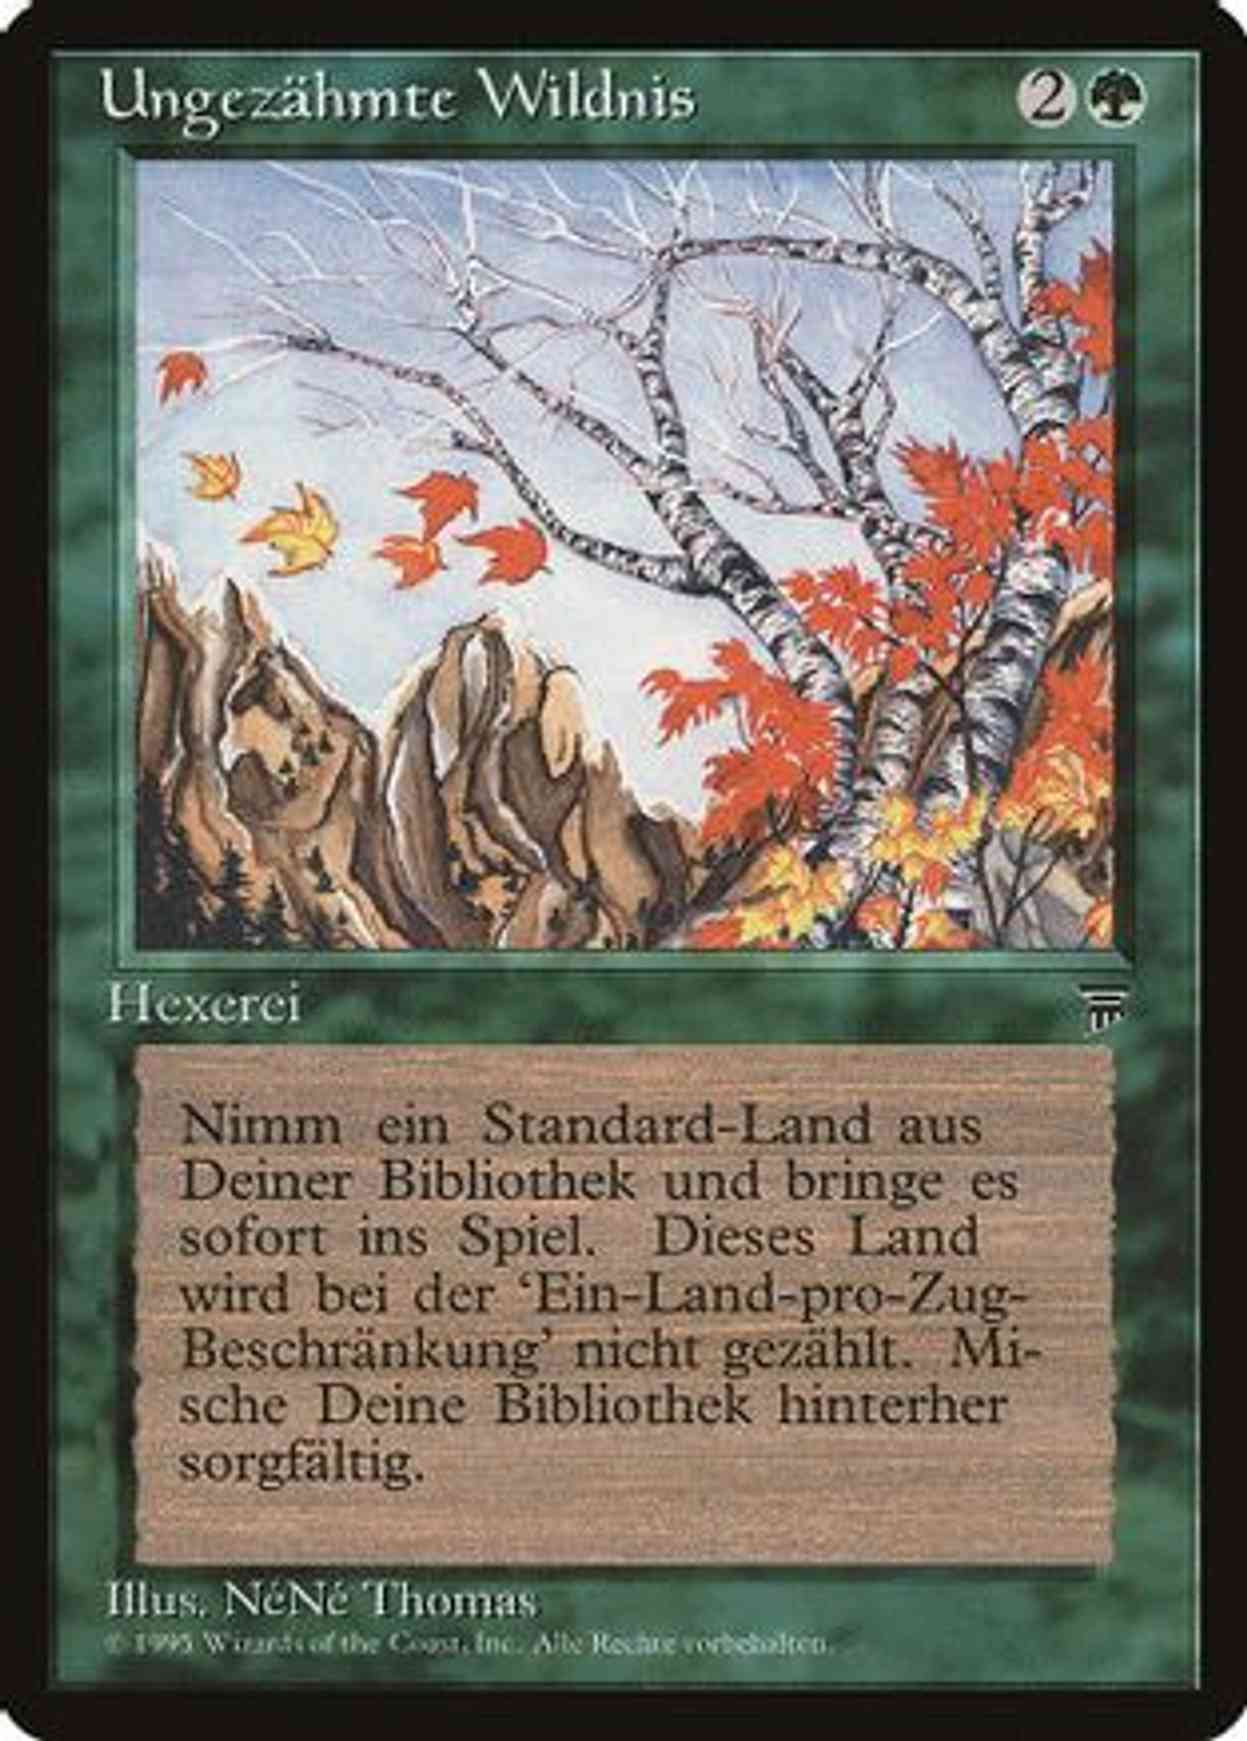 Untamed Wilds (German) - "Ungezahmte Wildnis" magic card front